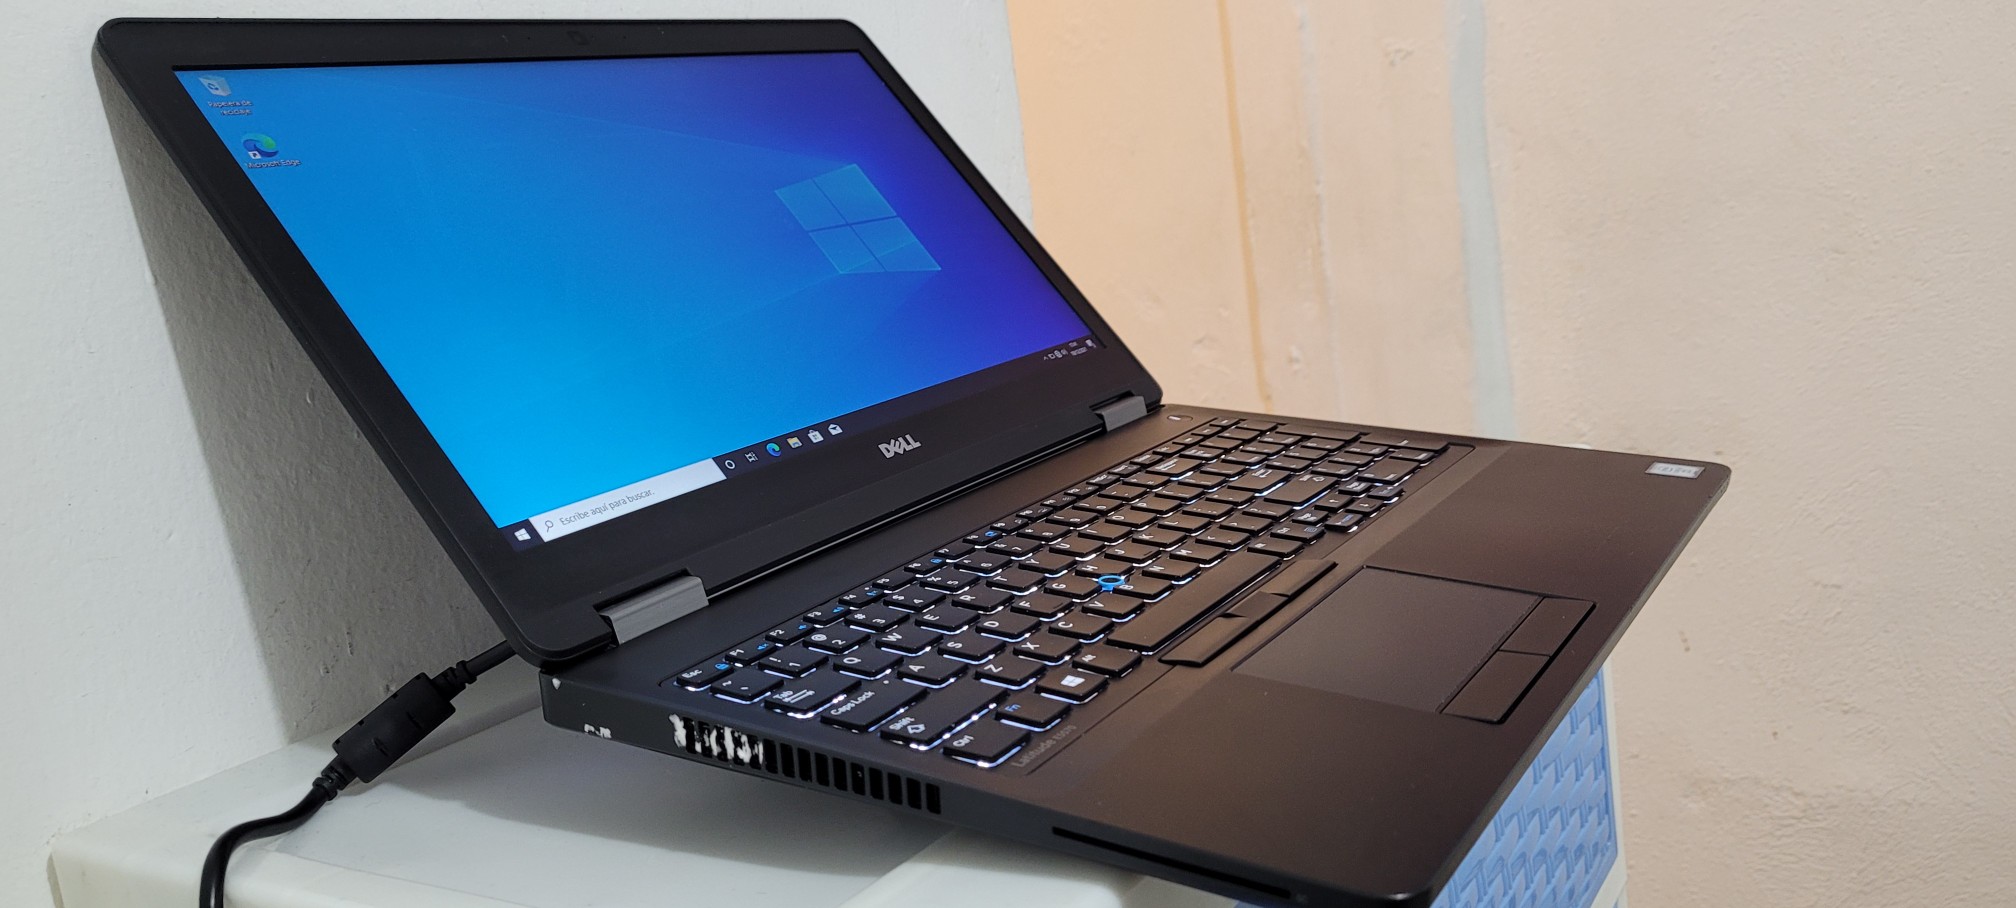 computadoras y laptops - Dell 5570 17 Pulg Core i5 6ta Gen Ram 8gb ddr4 Disco 128gb Y 500gb full 1